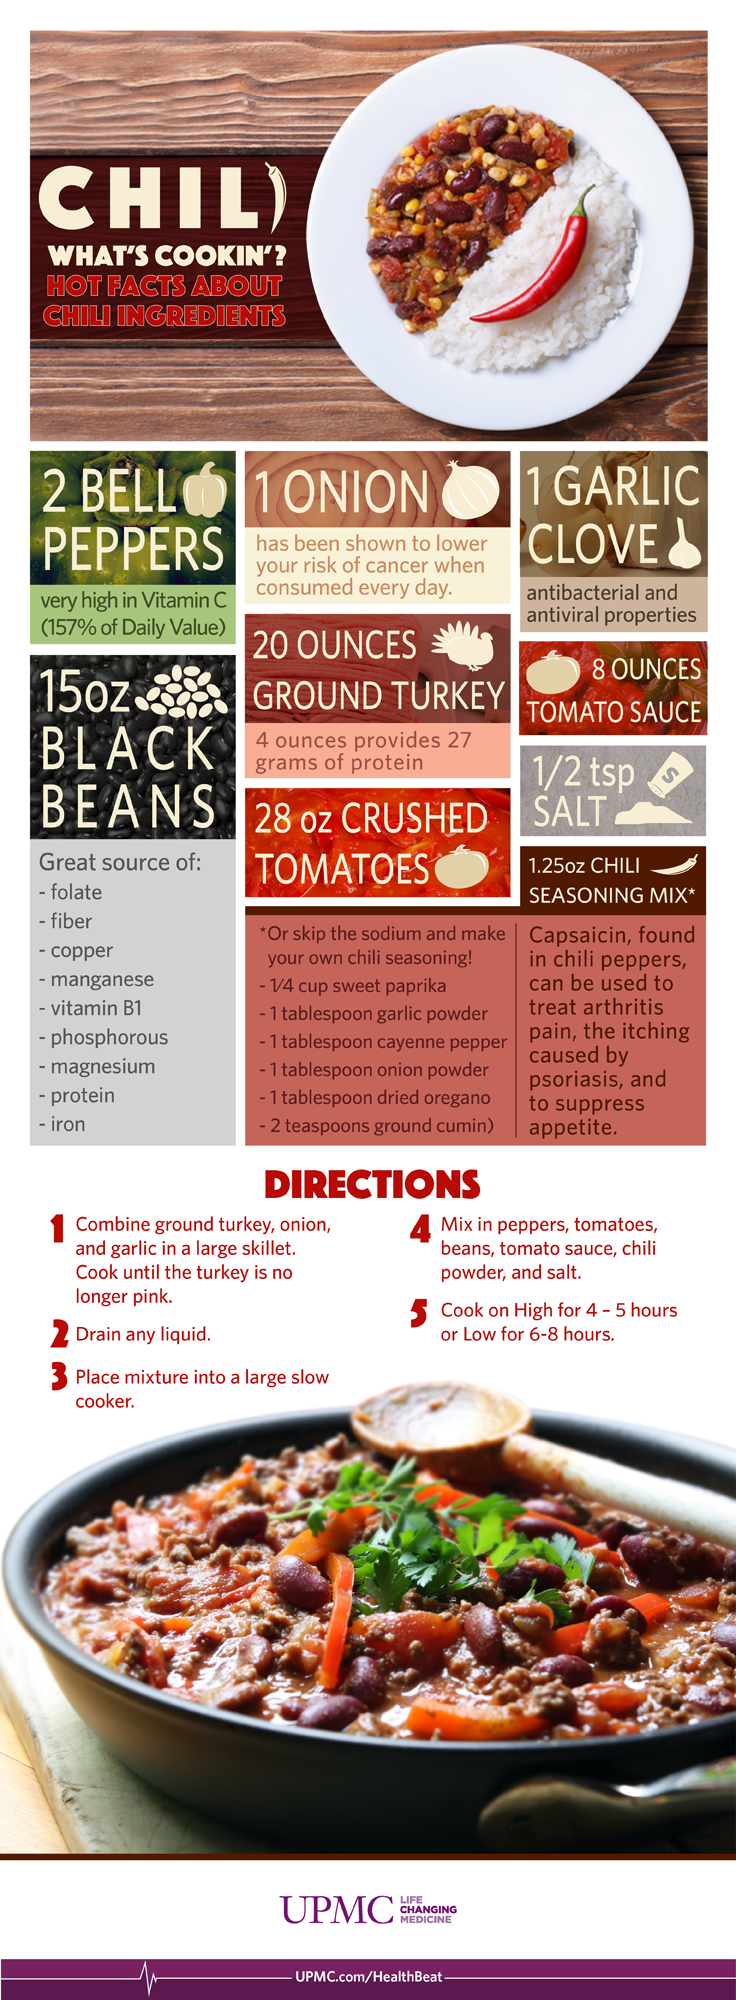 chili infographic